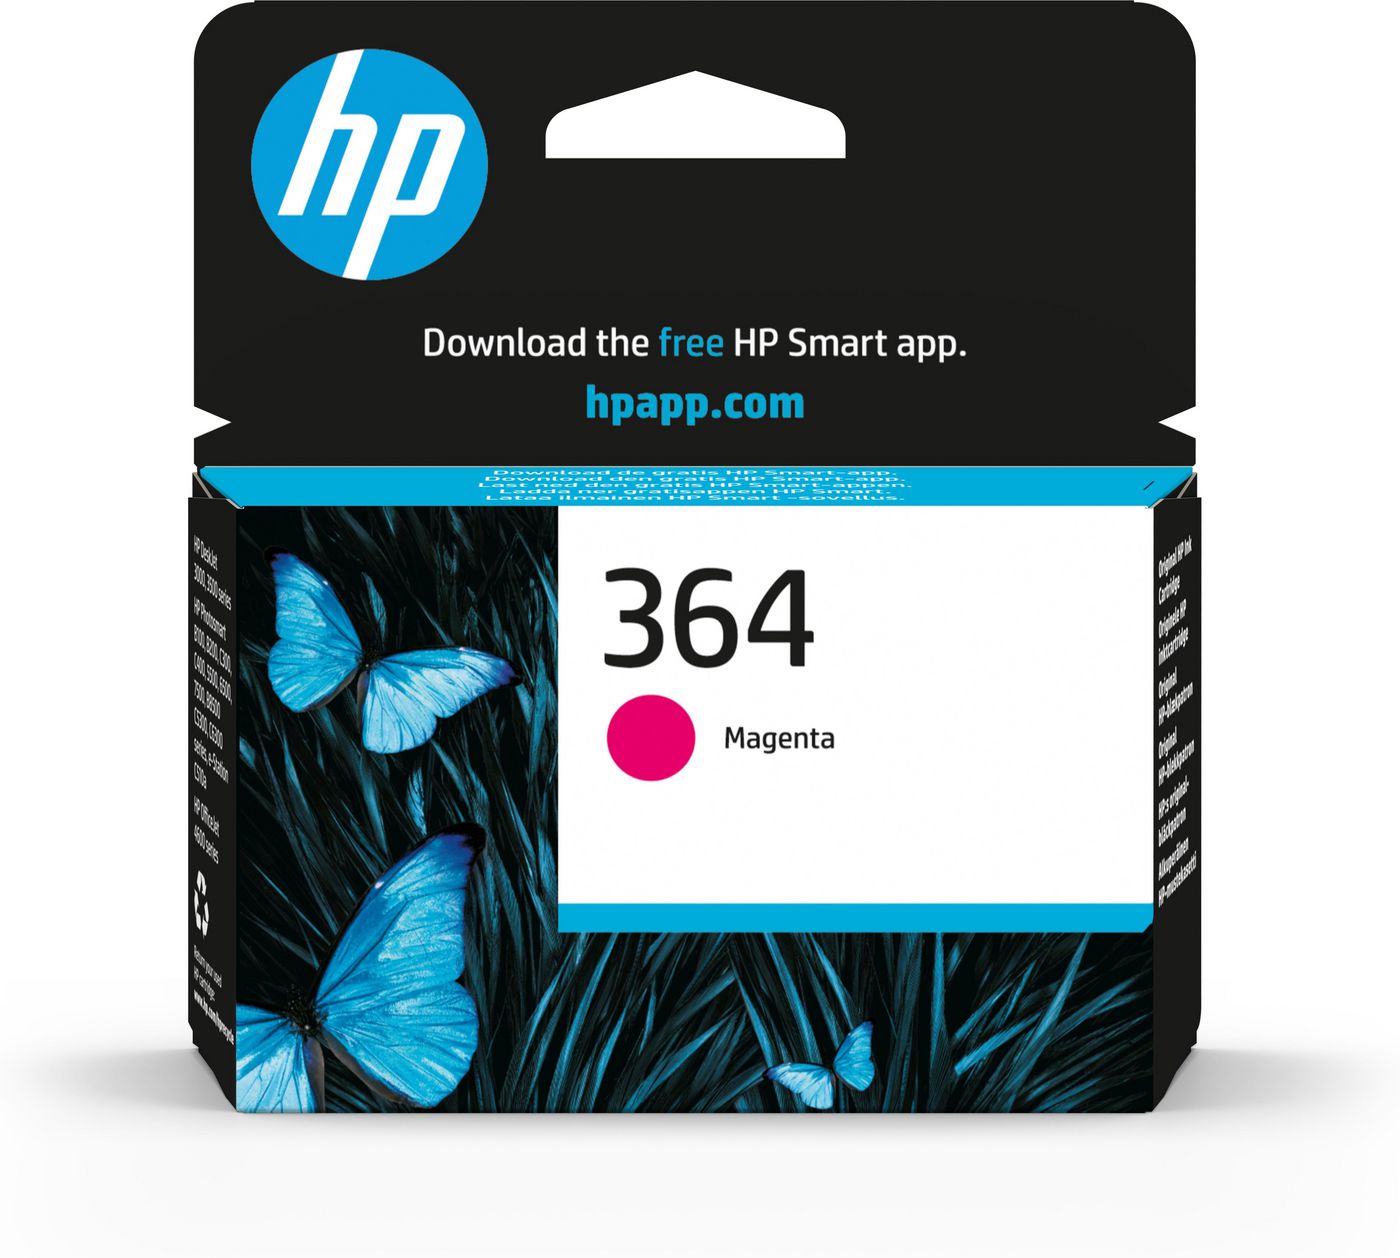 HP 364 Dye Based Magenta Tintenpatrone